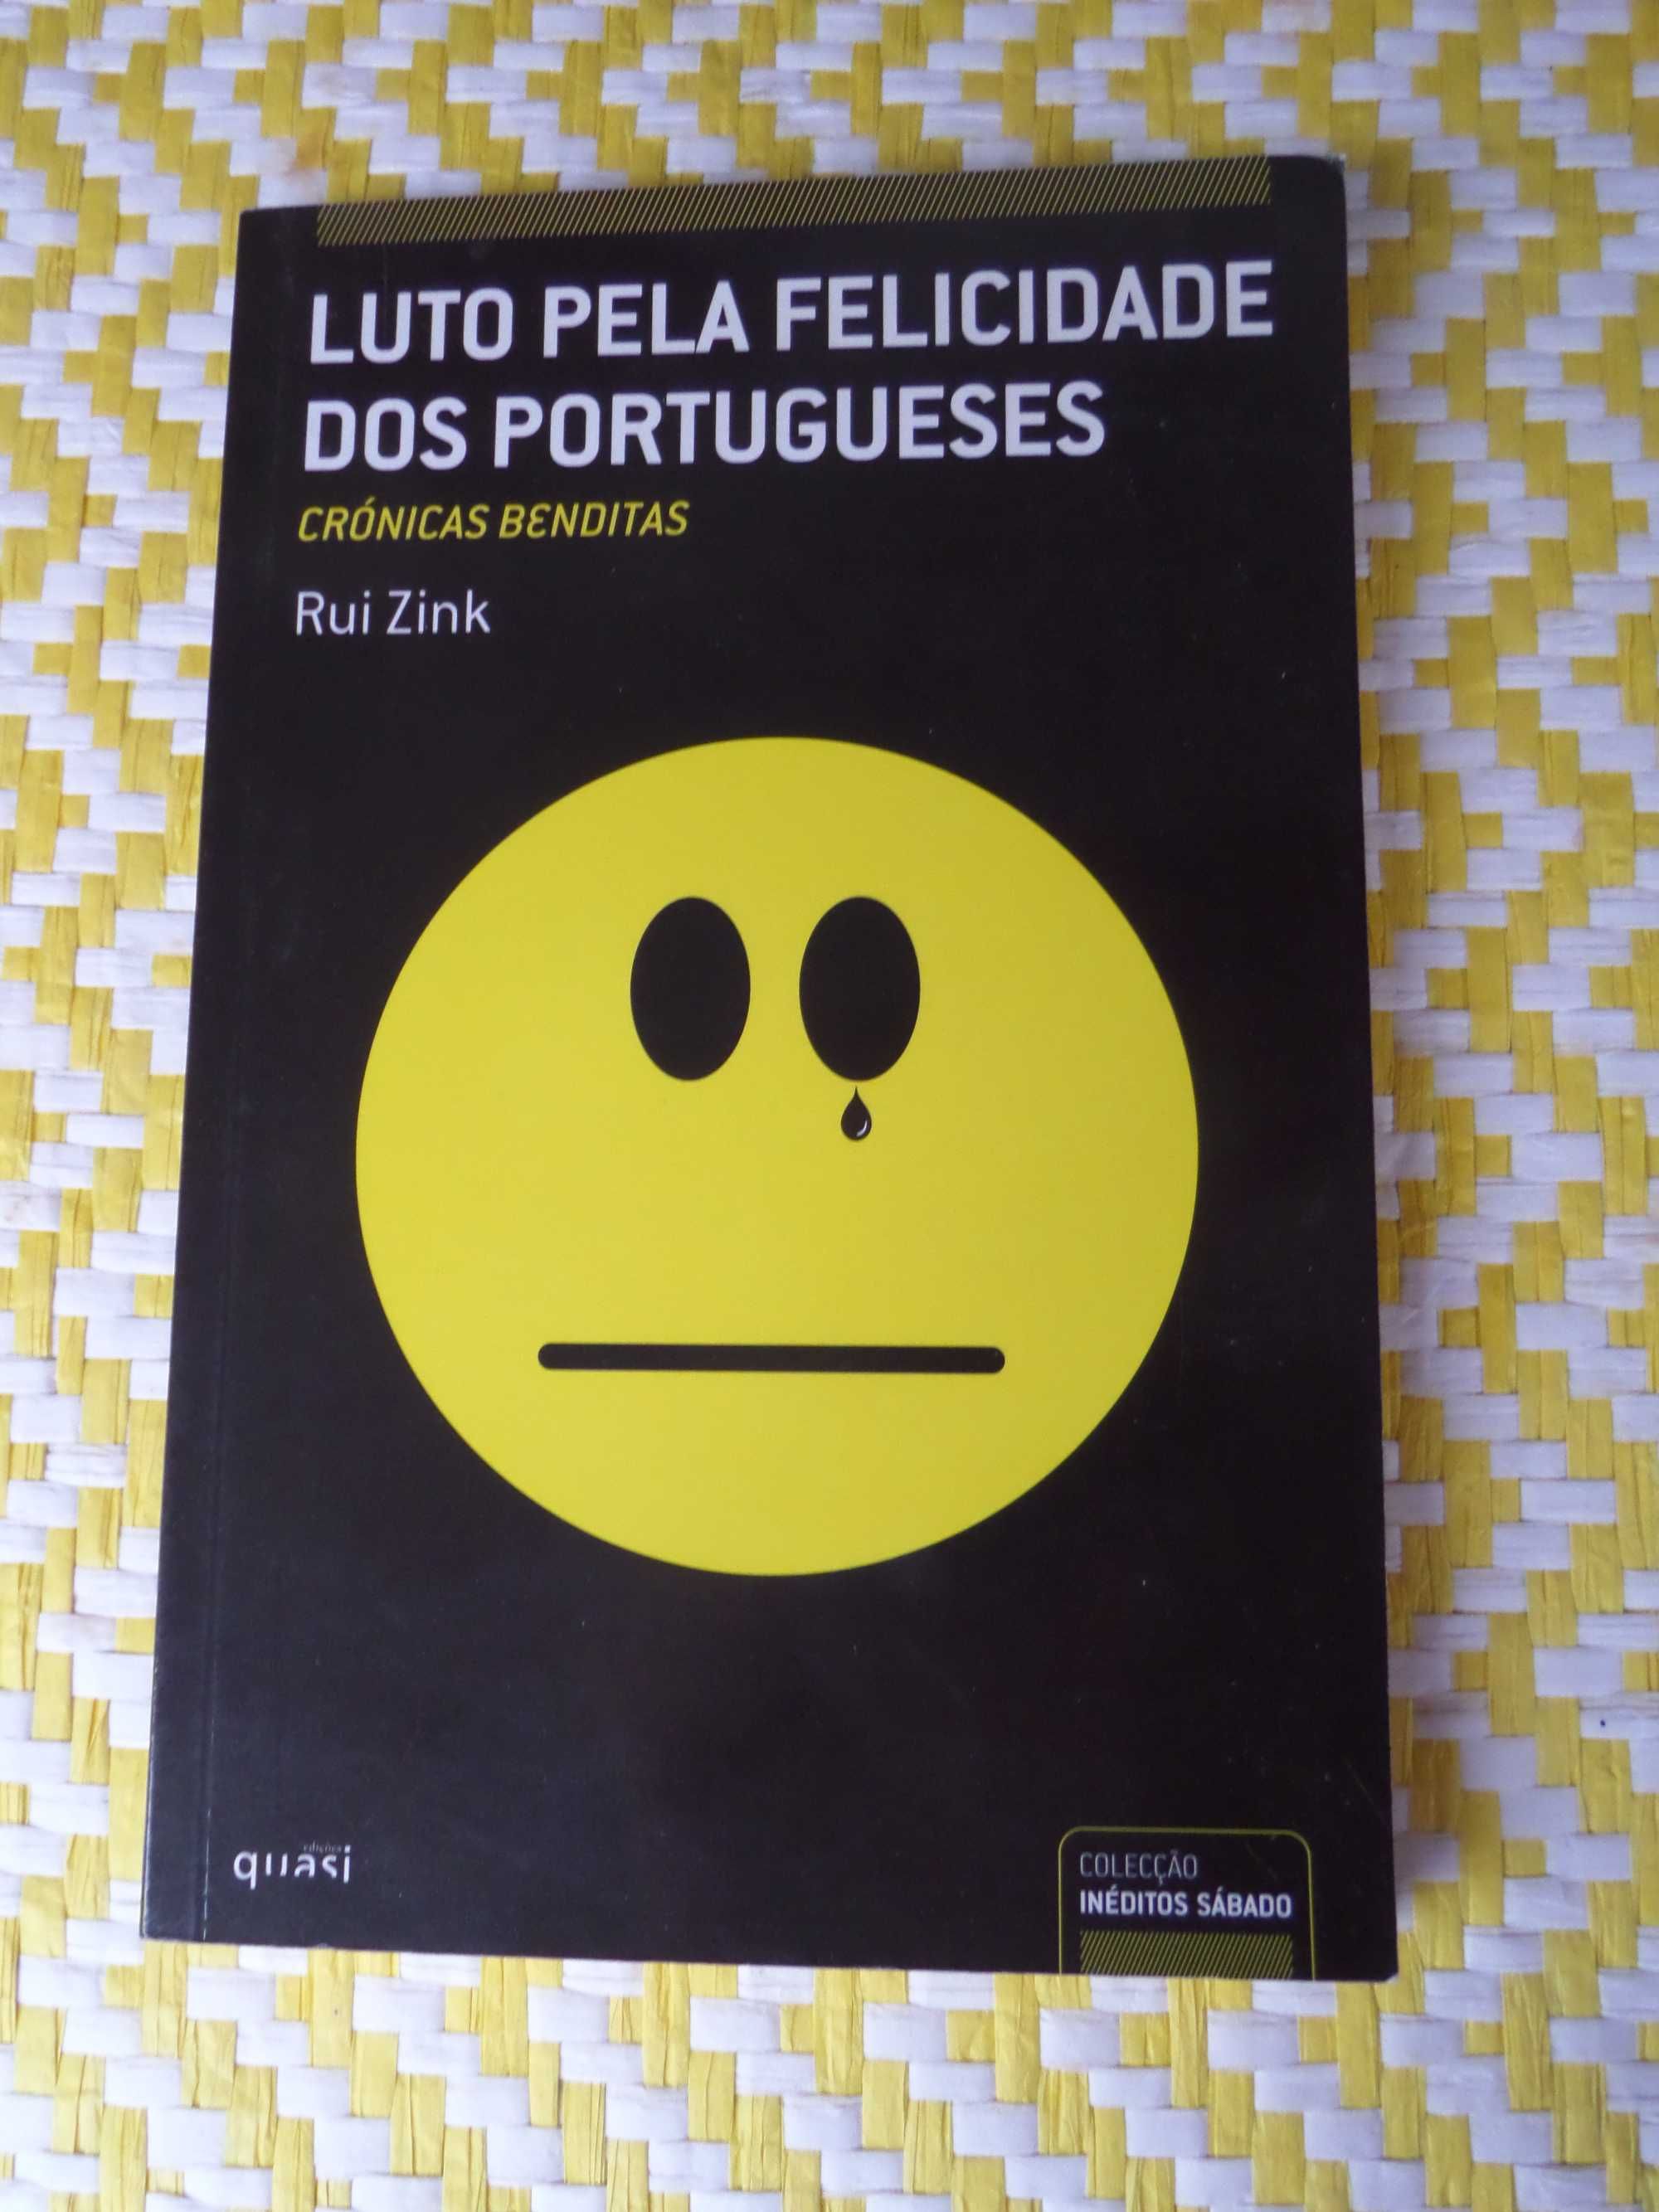 Luto pela felicidade dos Portugueses
Rui Zink
Edição : Quasi